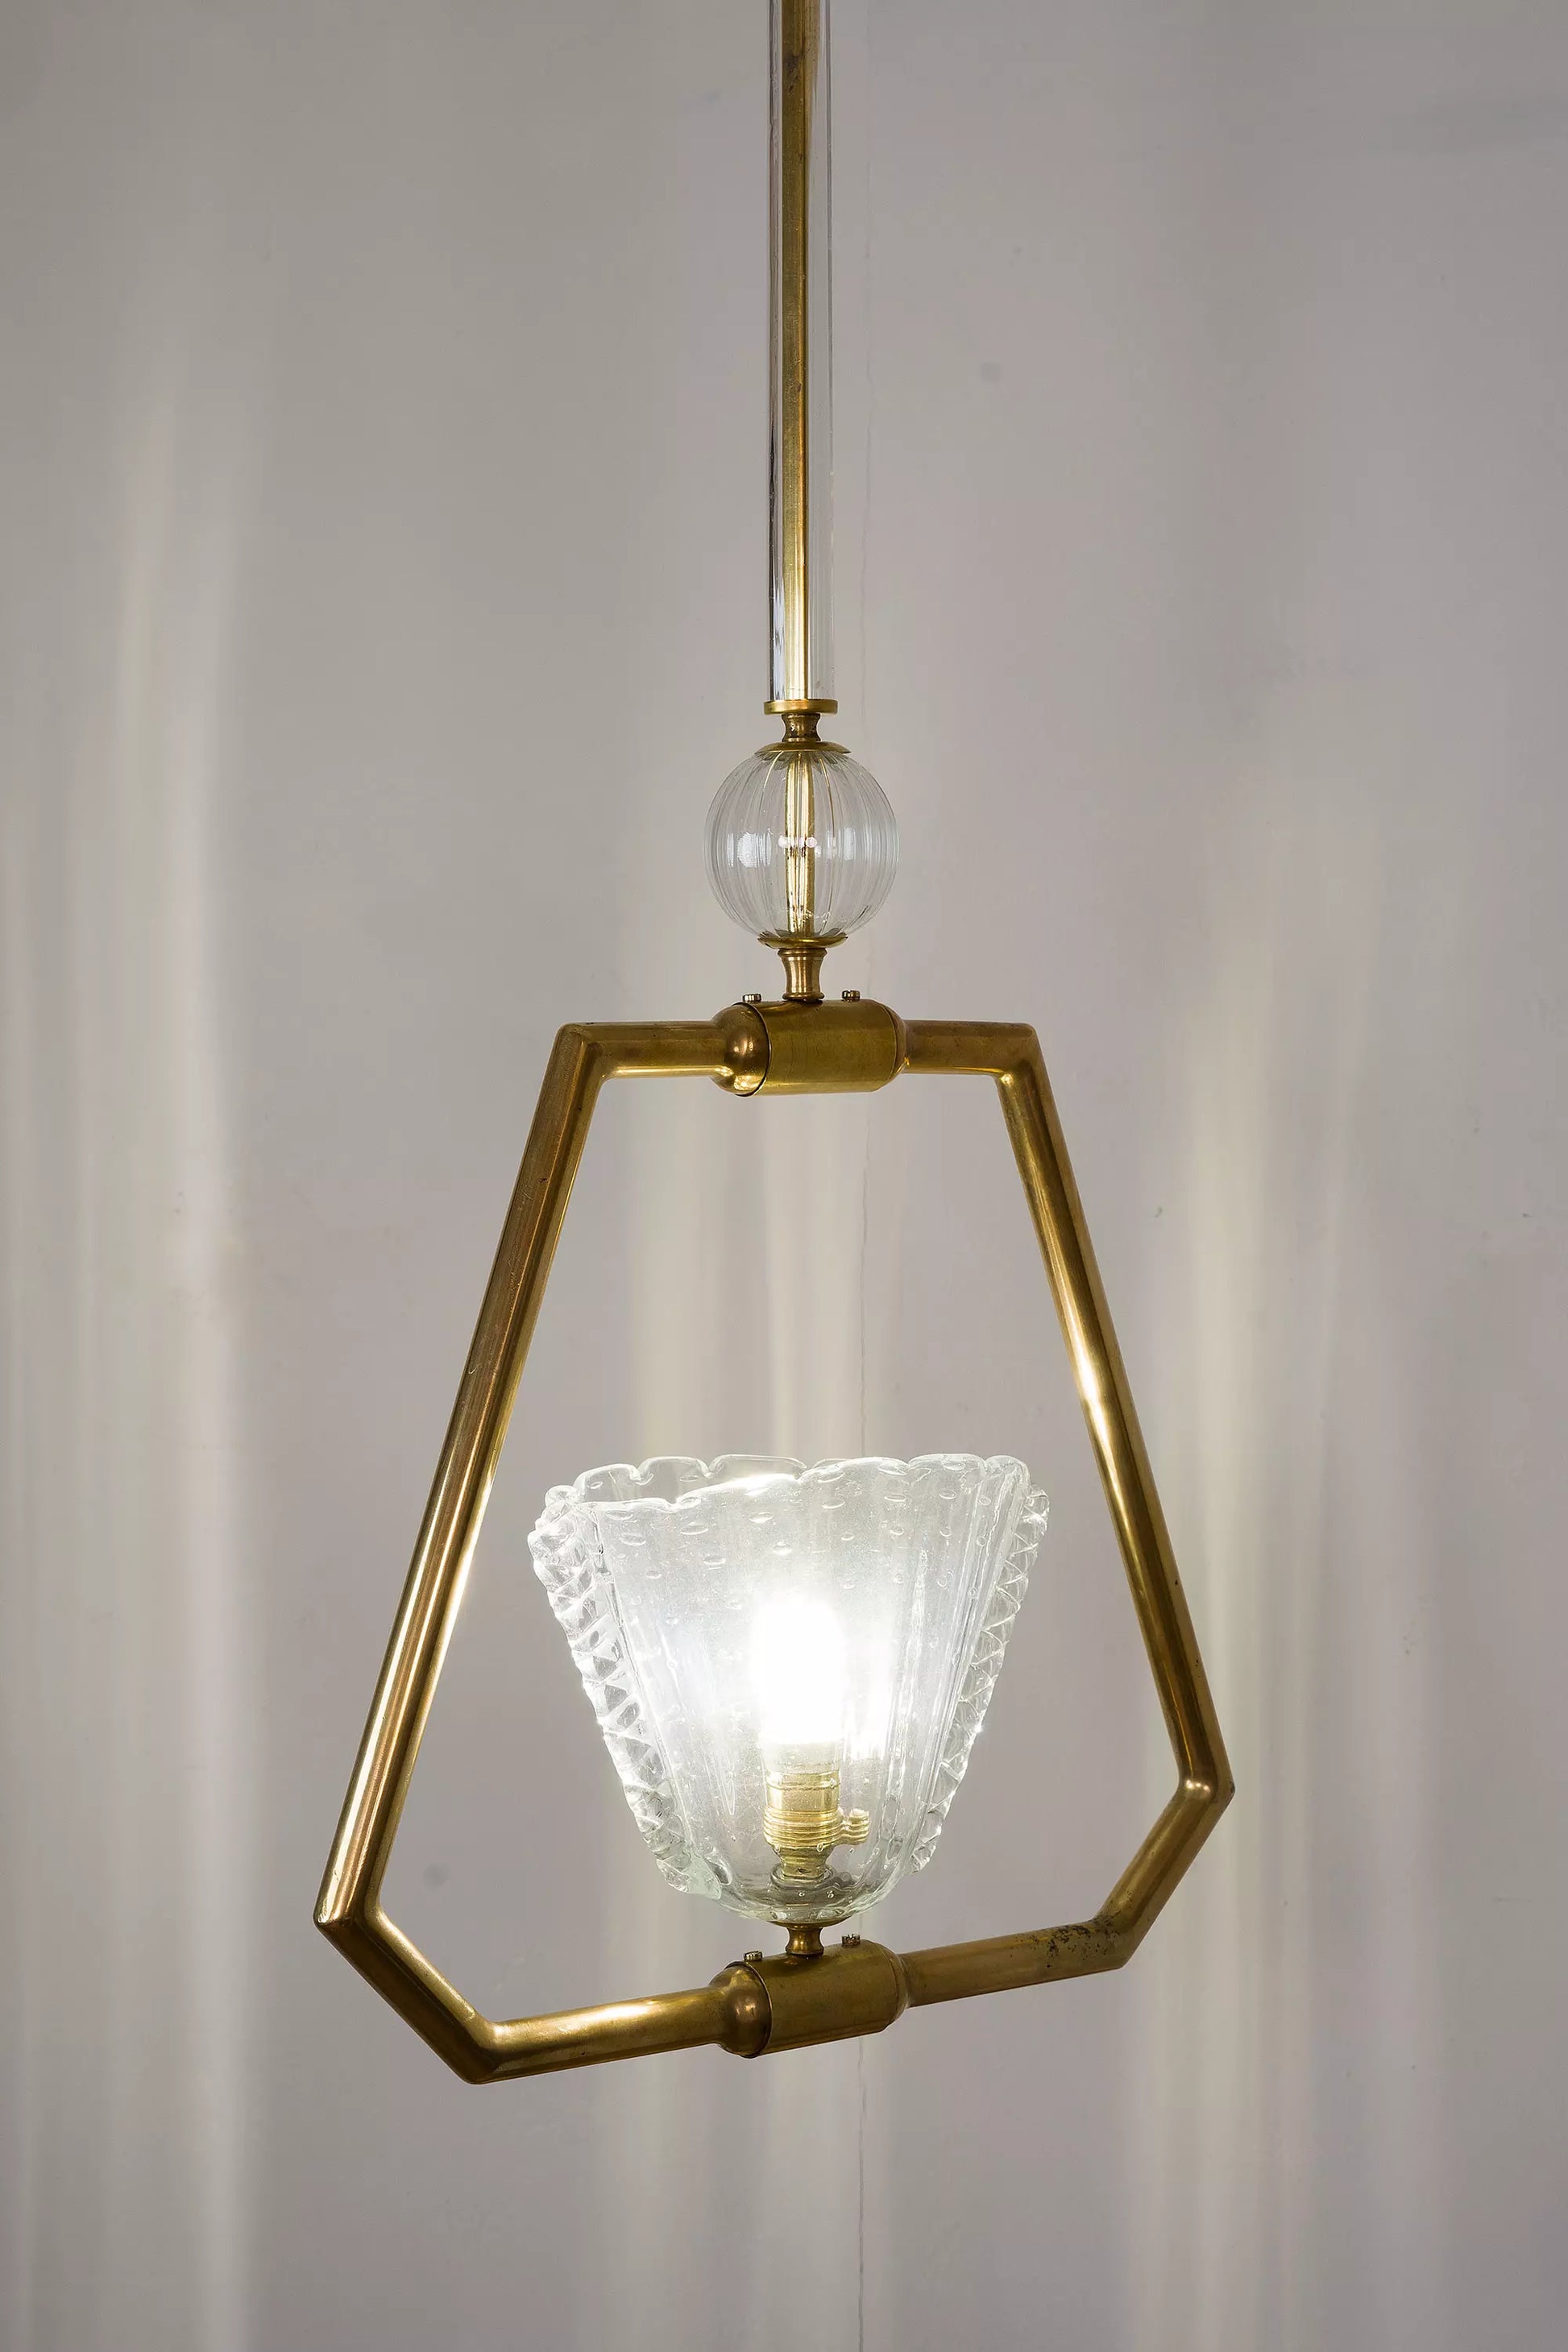 Originale lampadario veneziano dei primi anni del ventesimo secolo.| lo Stile Italiano